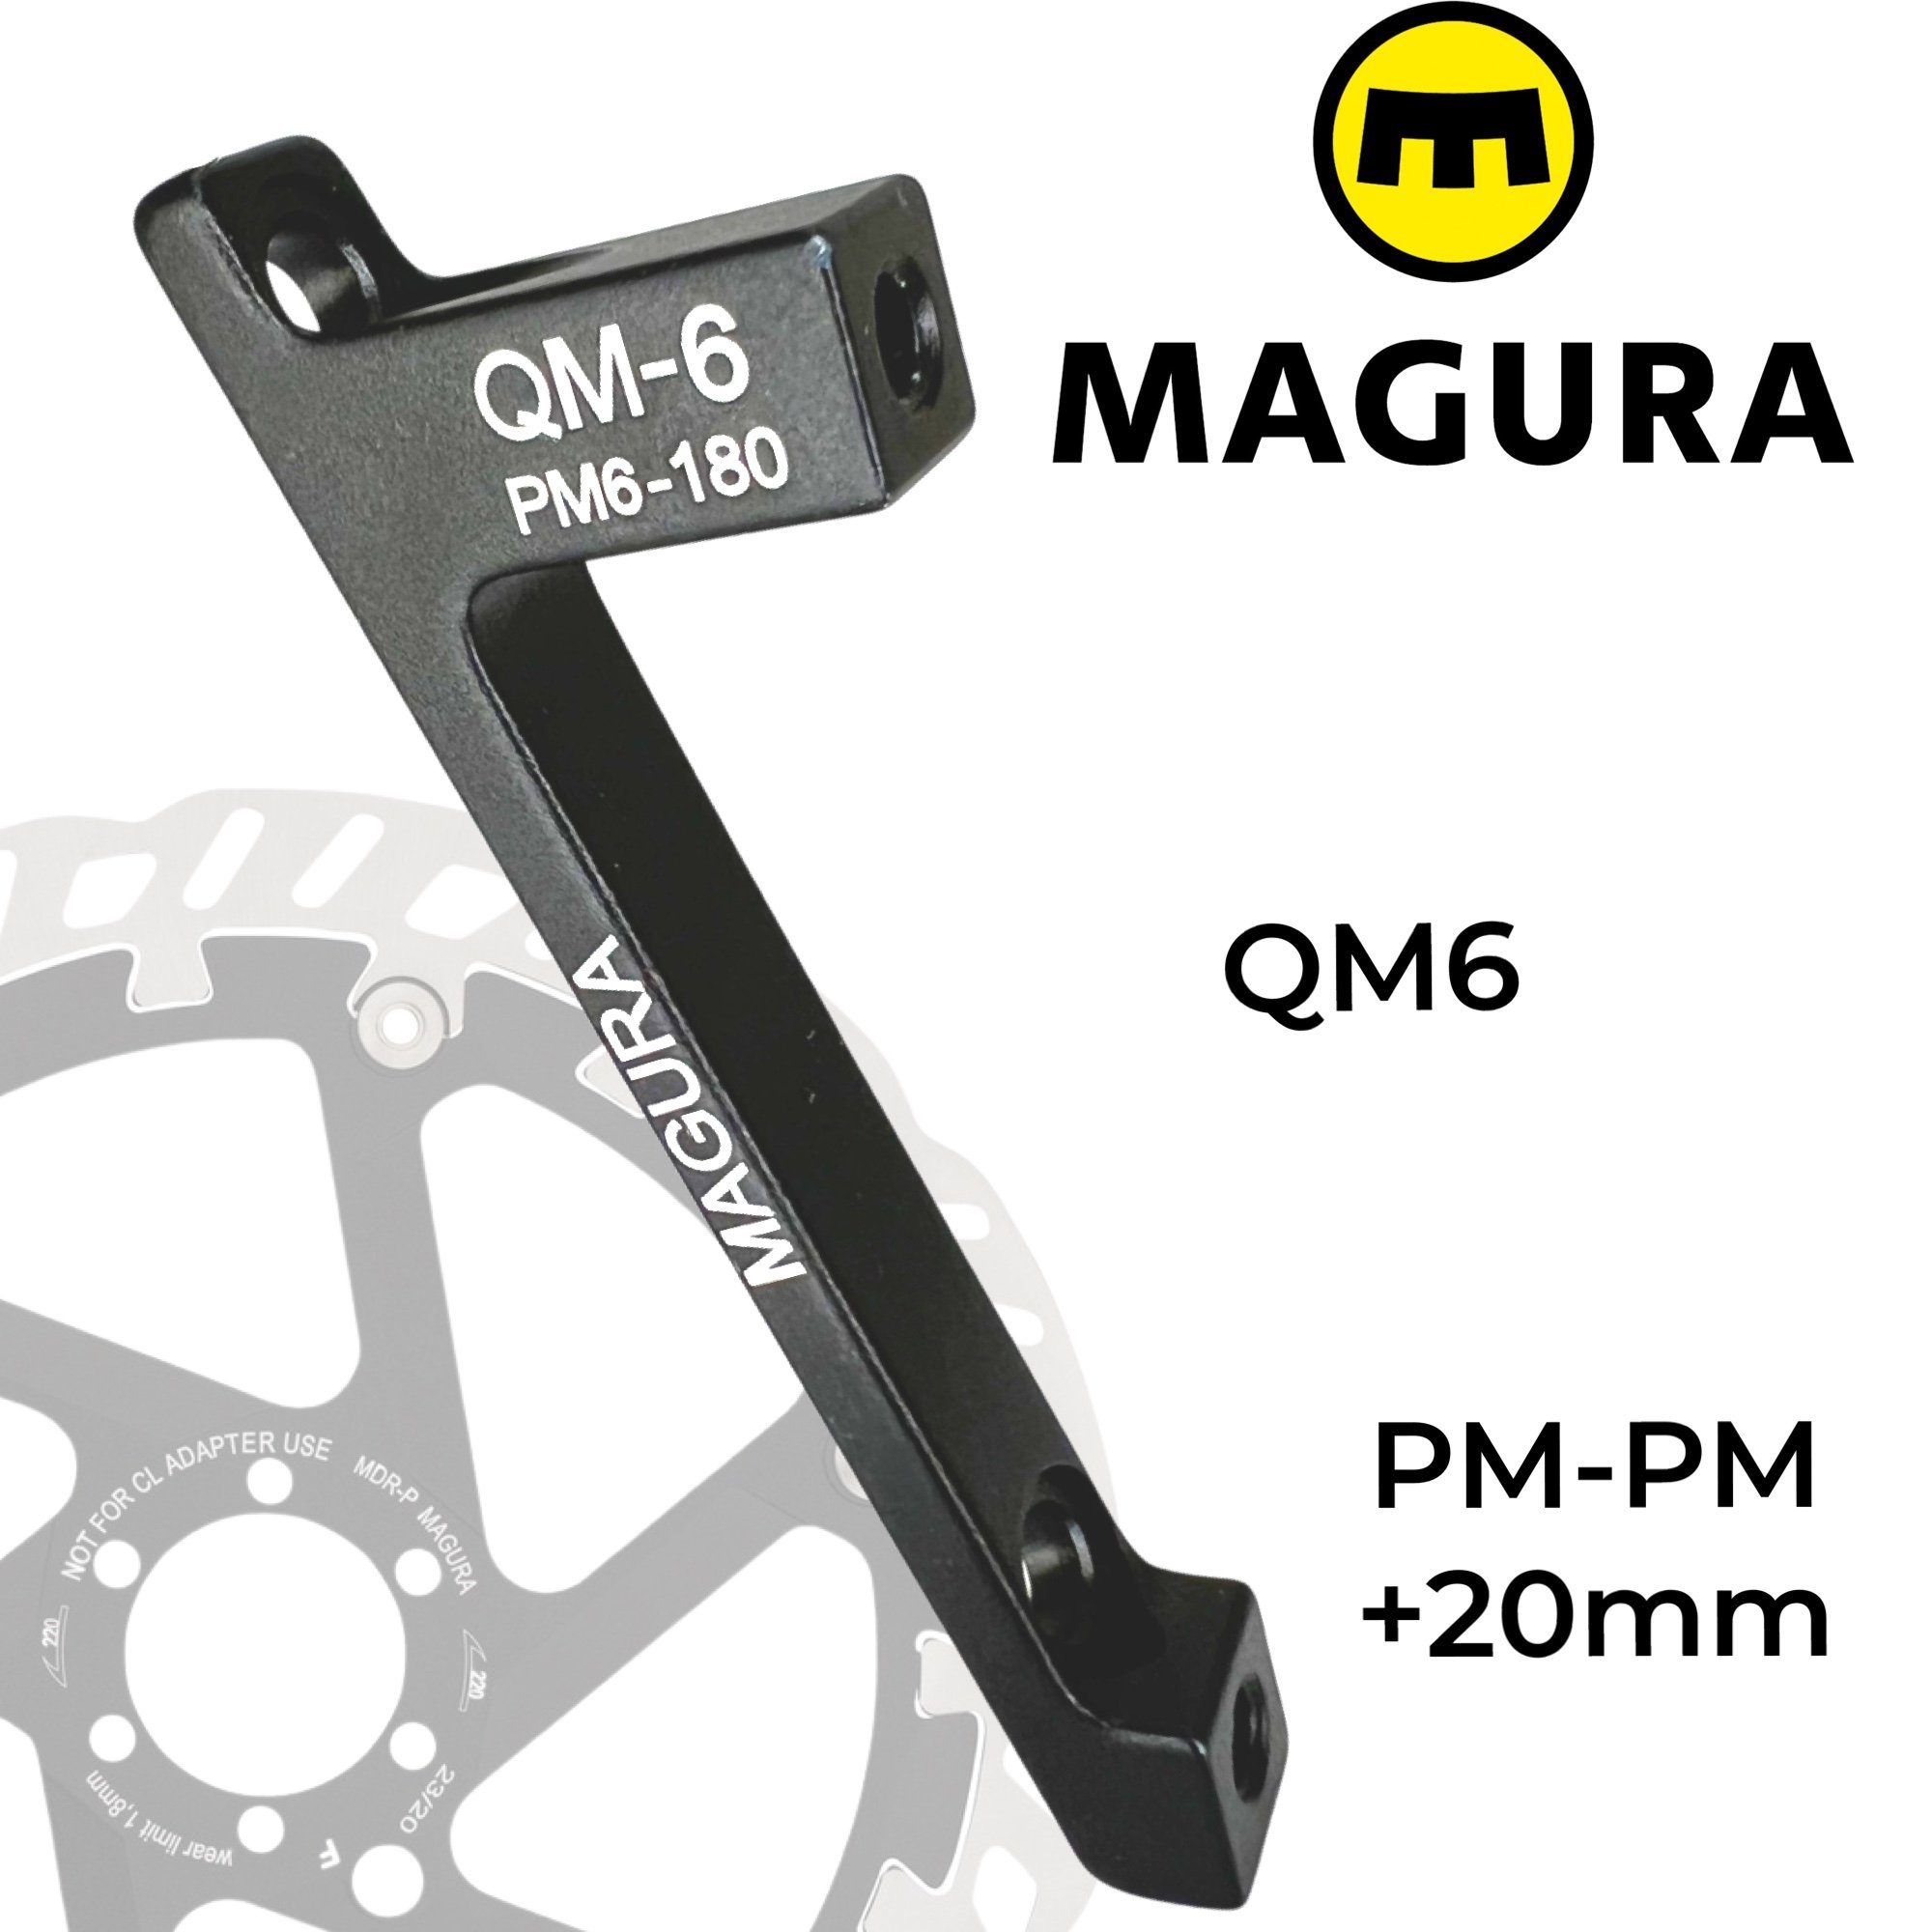 Magura Scheibenbremse Magura Bremsscheiben Adapter QM6 PM 160-180 +20mm